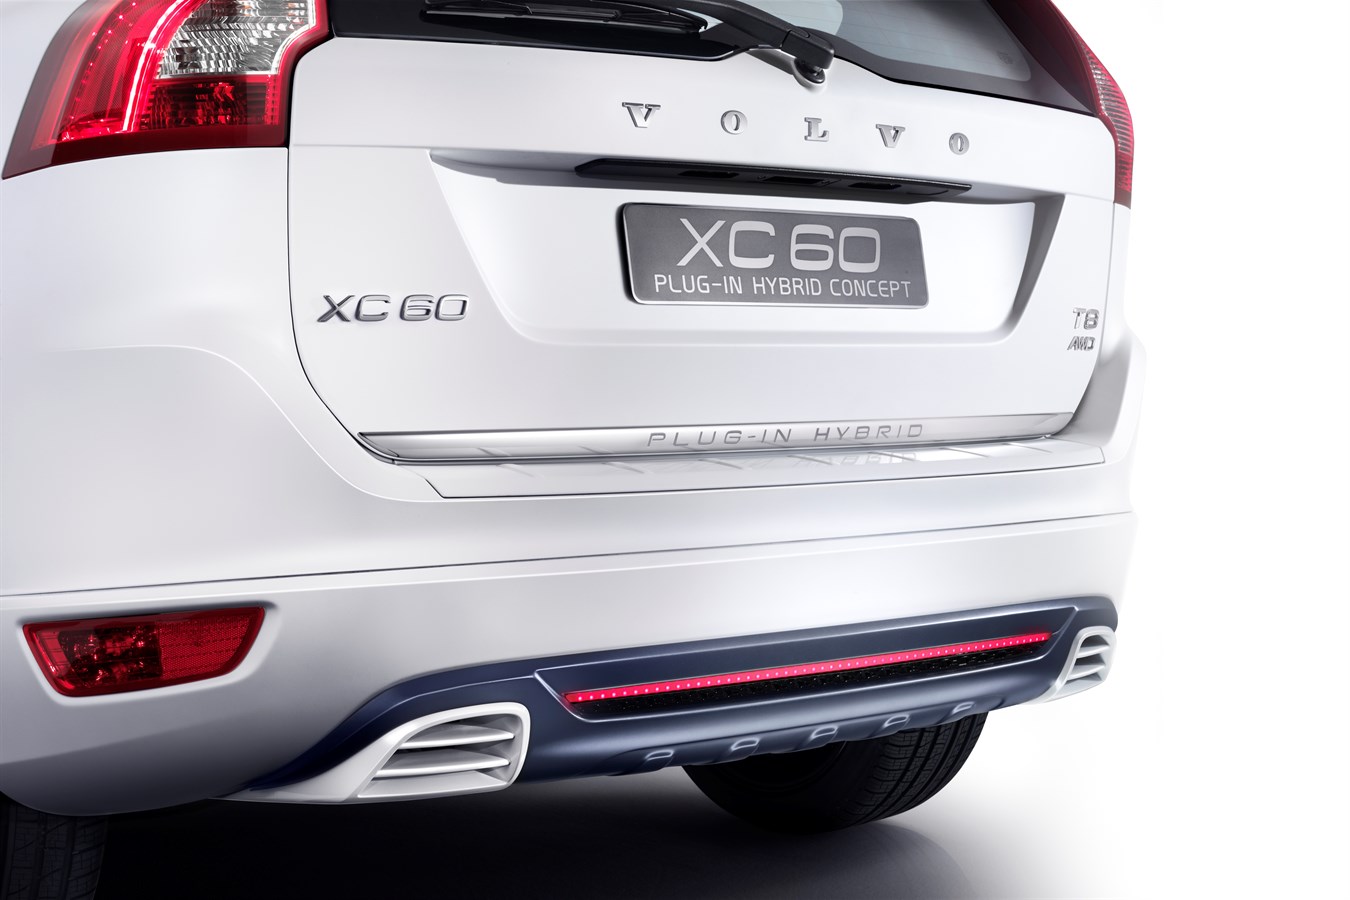 Volvo XC60 Zubehör: Was macht Sinn, was weniger?